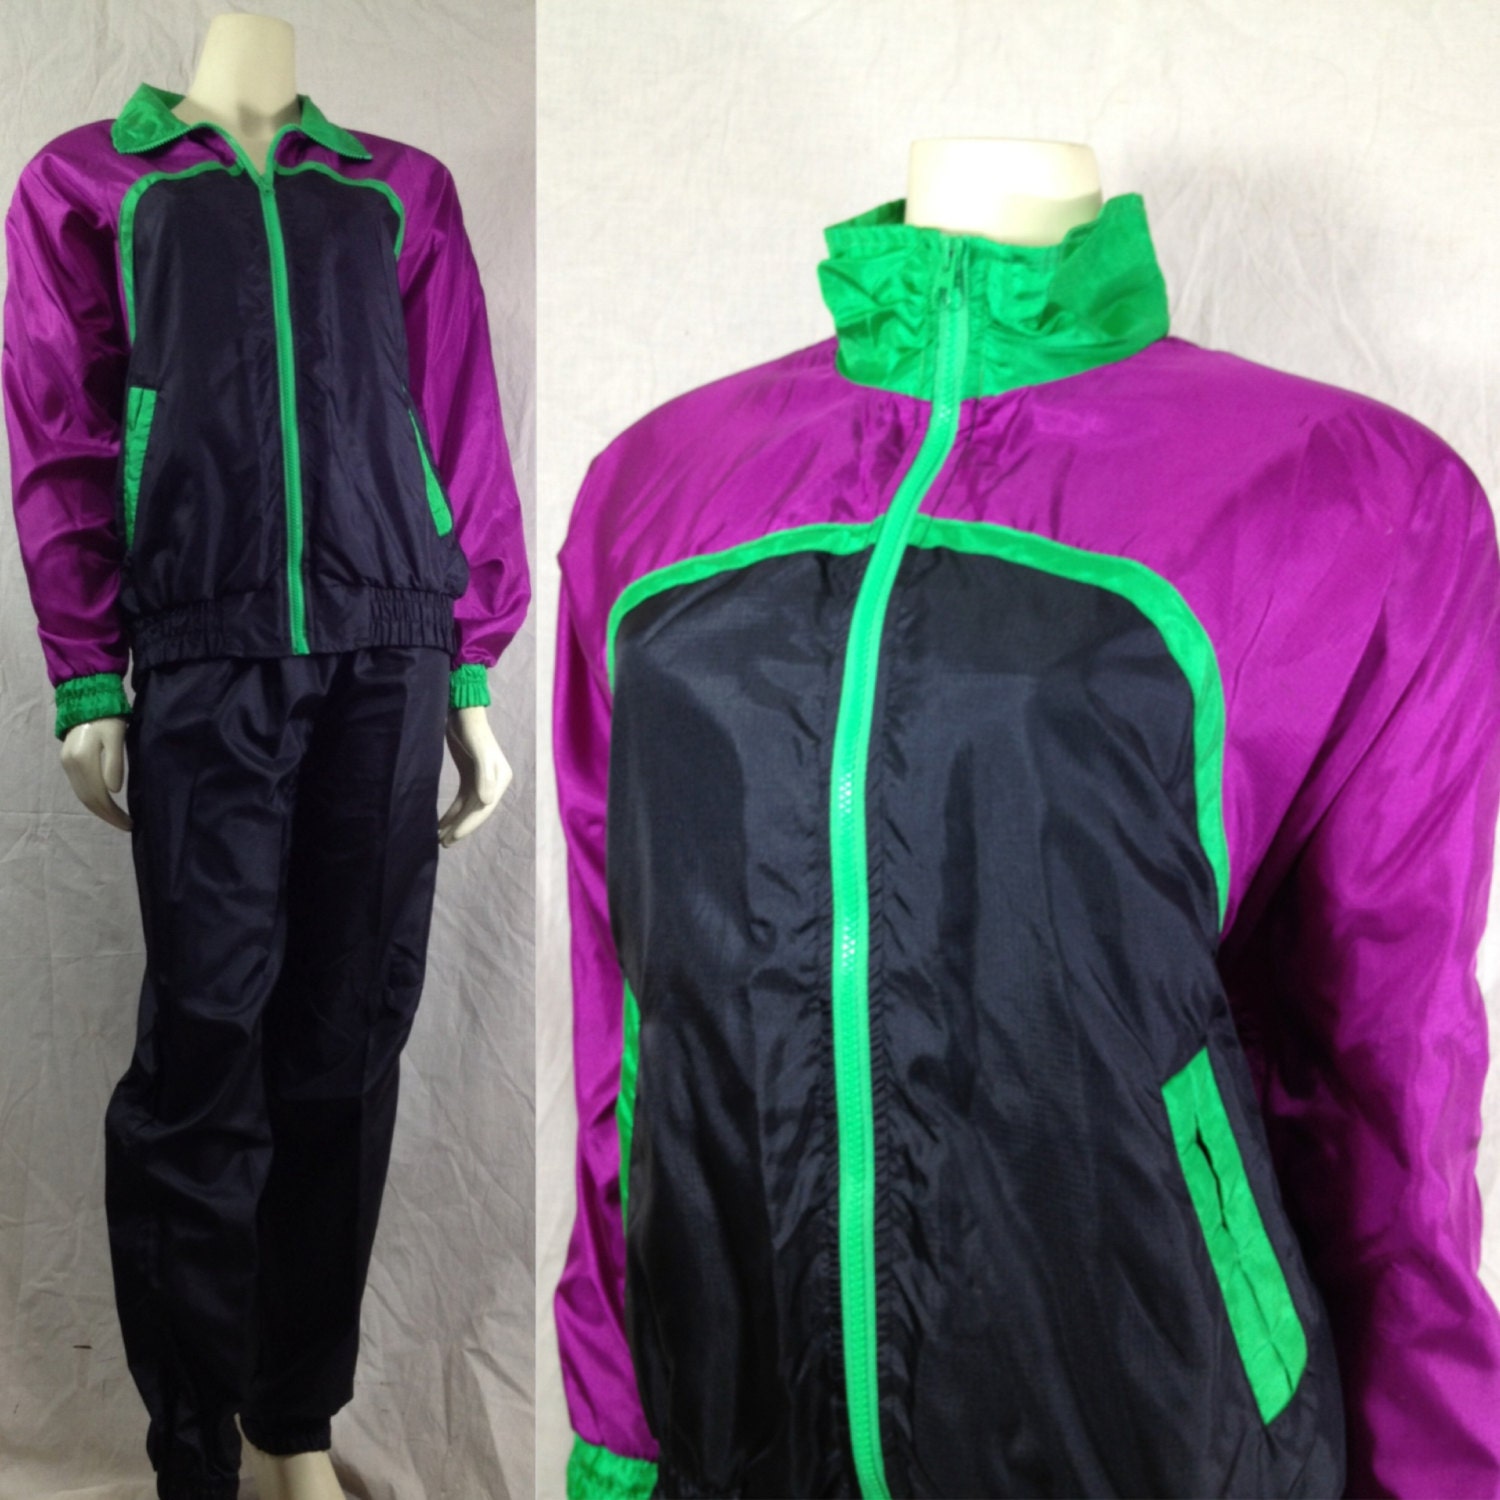 Vintage 1990s track suit R E Sport purple by momandpopcultureshop